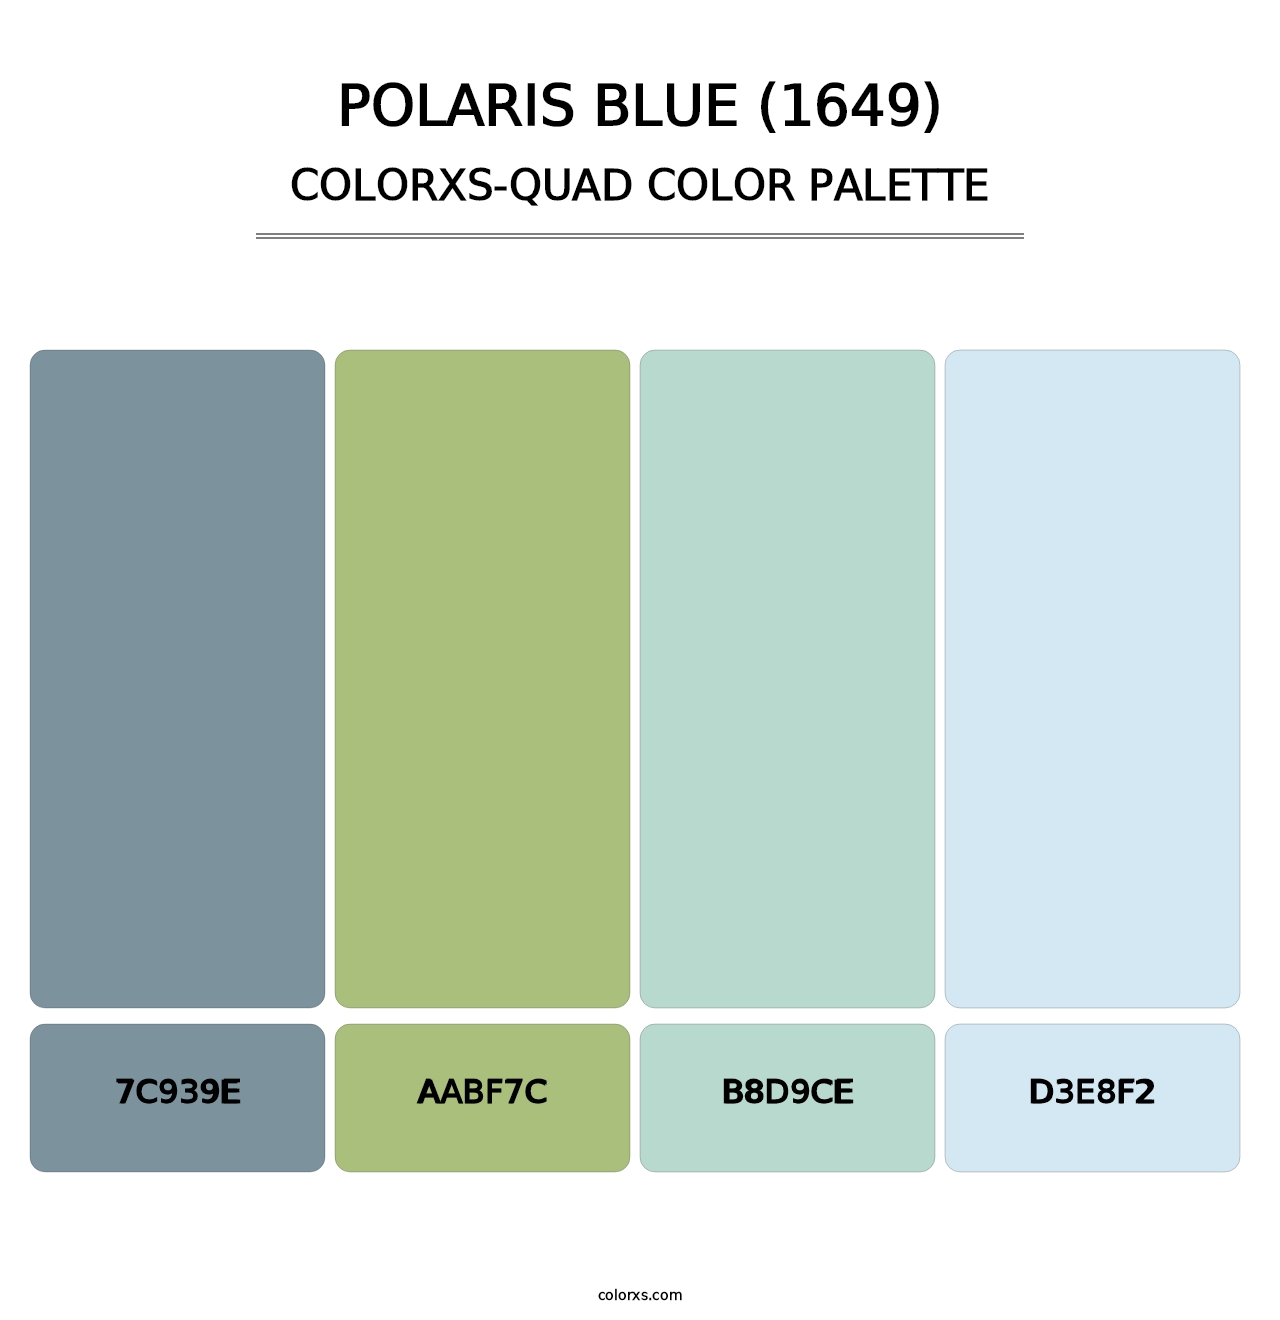 Polaris Blue (1649) - Colorxs Quad Palette